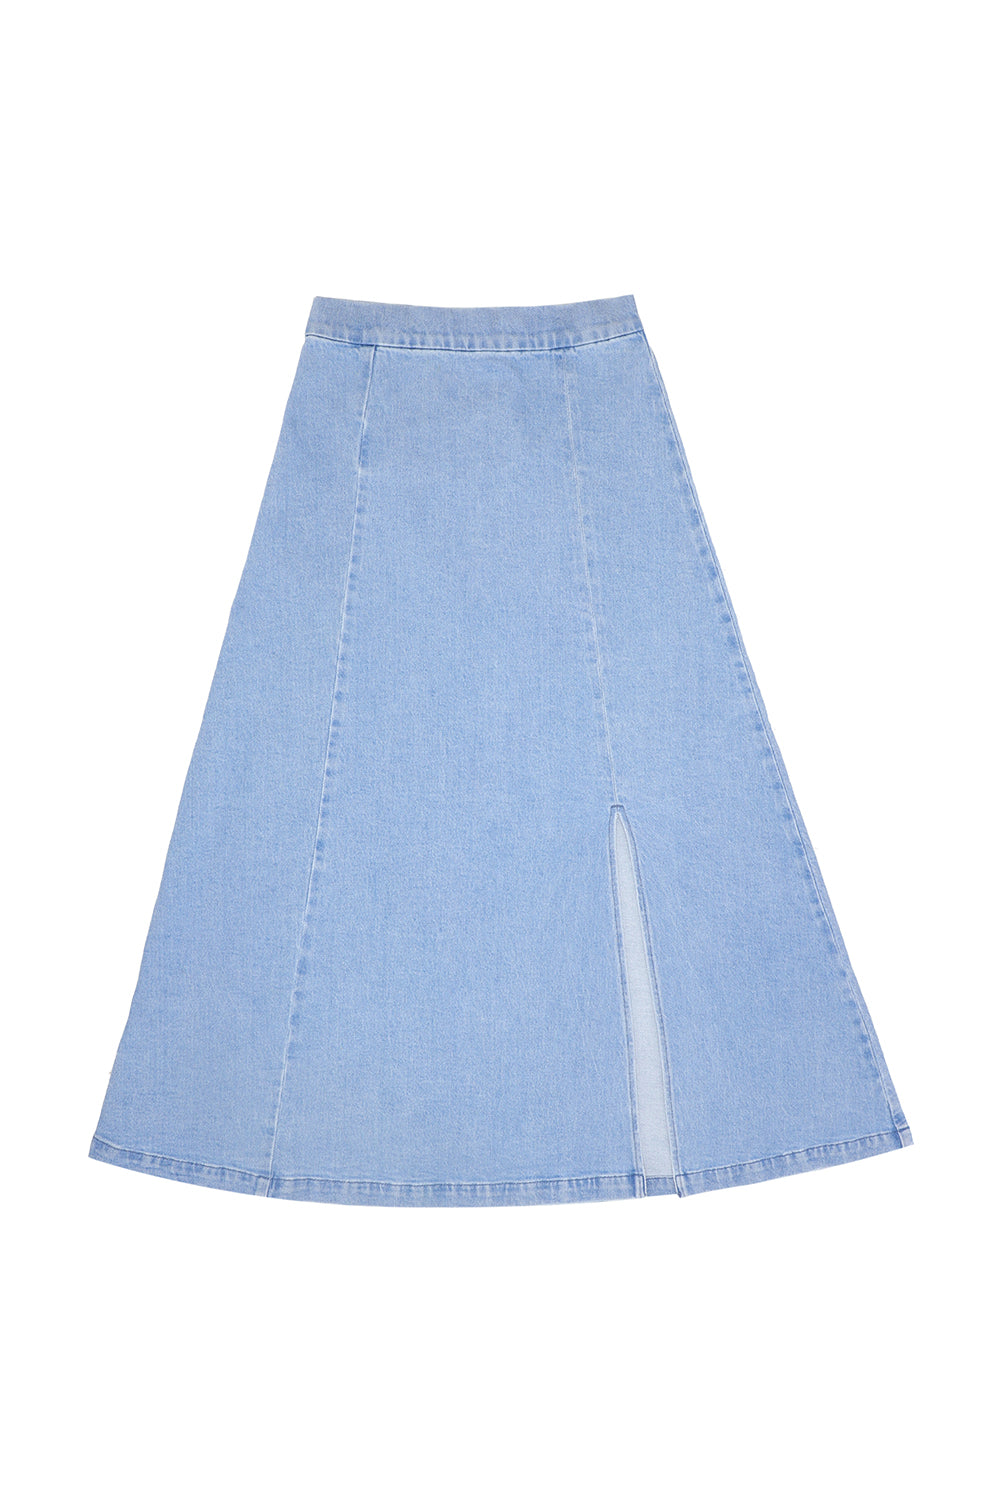 Faye Slip Skirt in Oceanic Blue